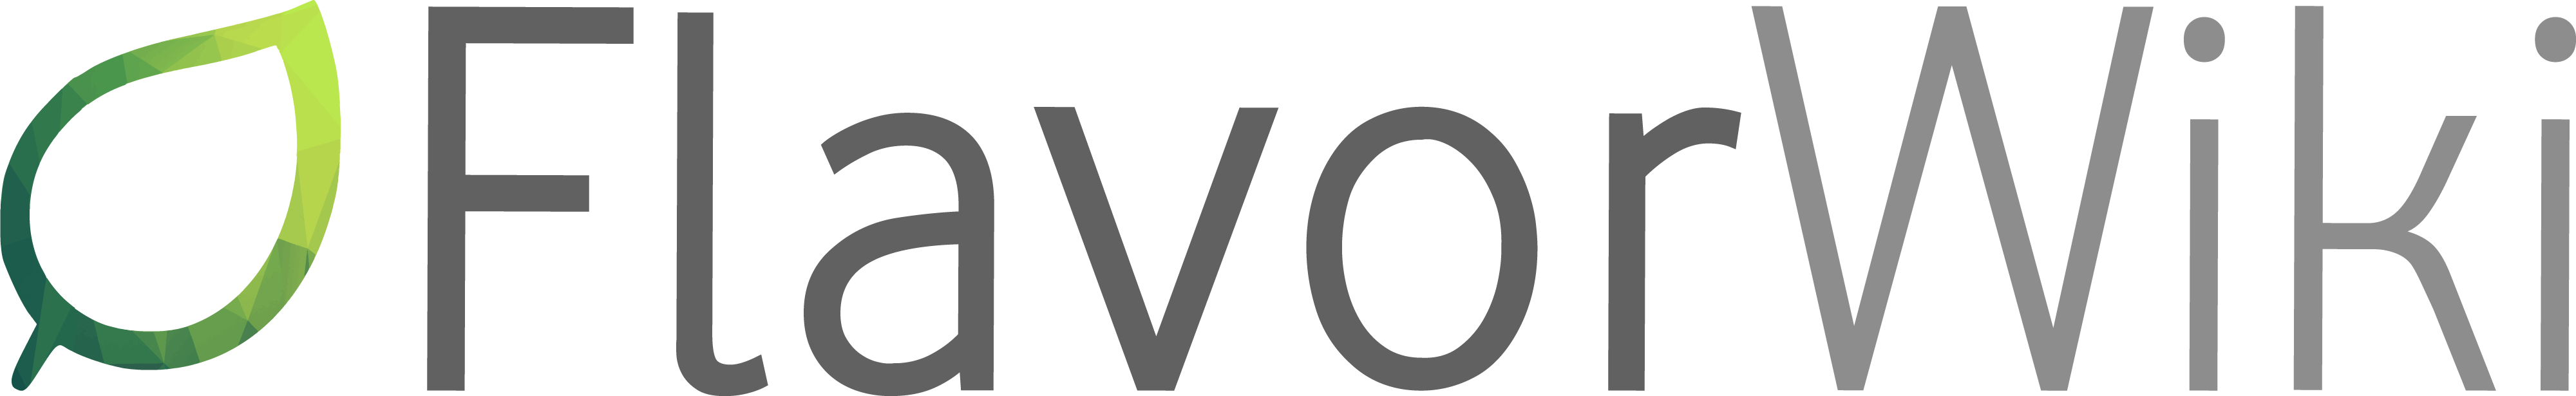 FlavorWiki logo.